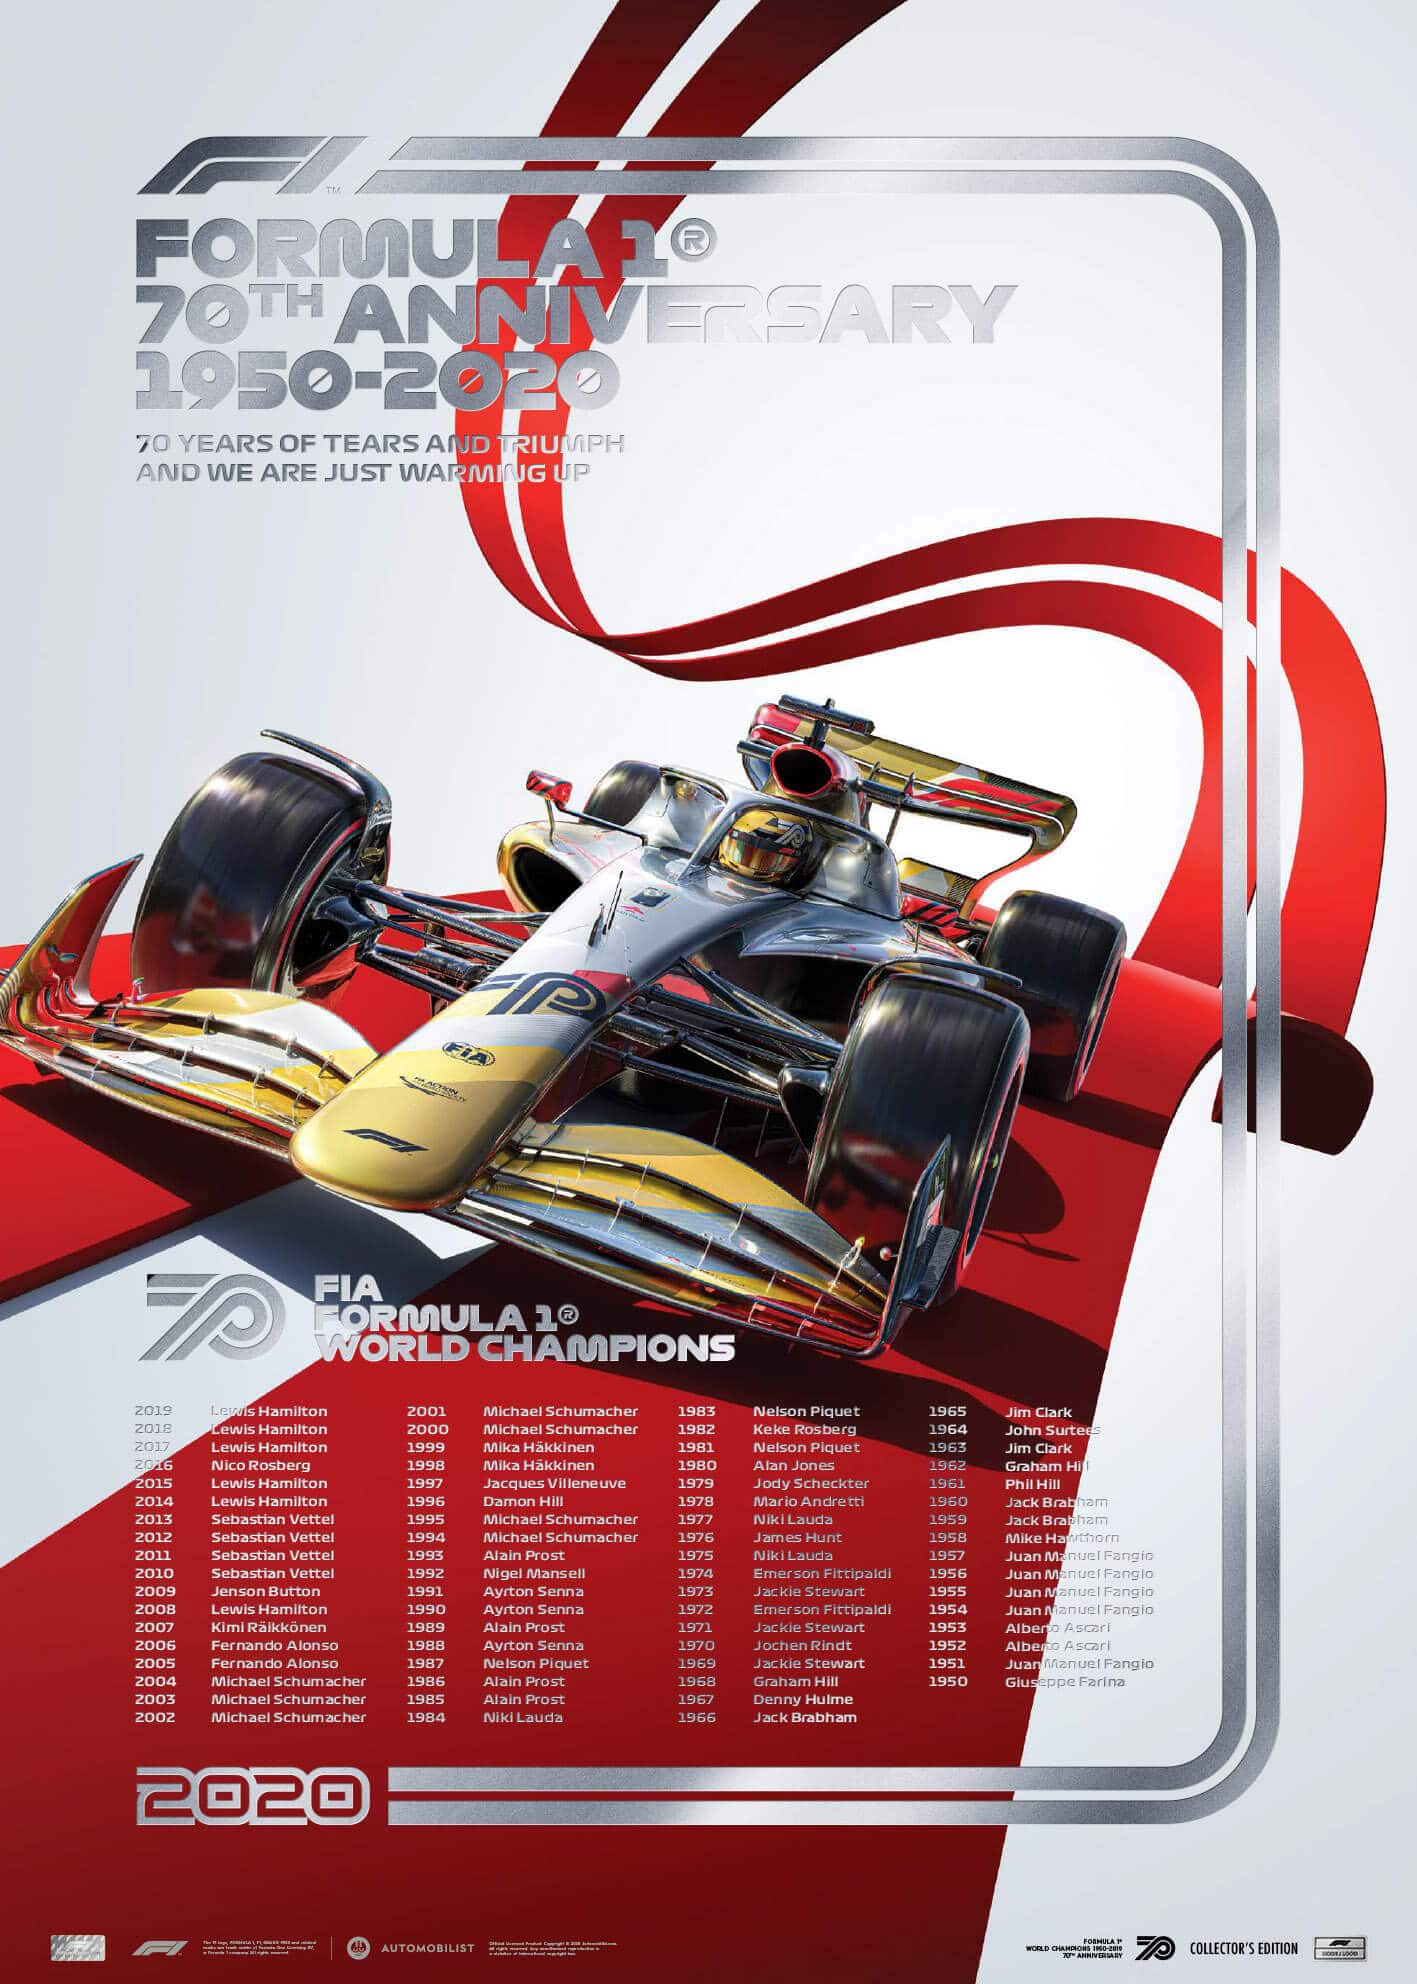 FIA FORMULA 1® WORLD CHAMPIONS 1950-2019 – 70TH ANNIVERSARY | Collector’s Edition